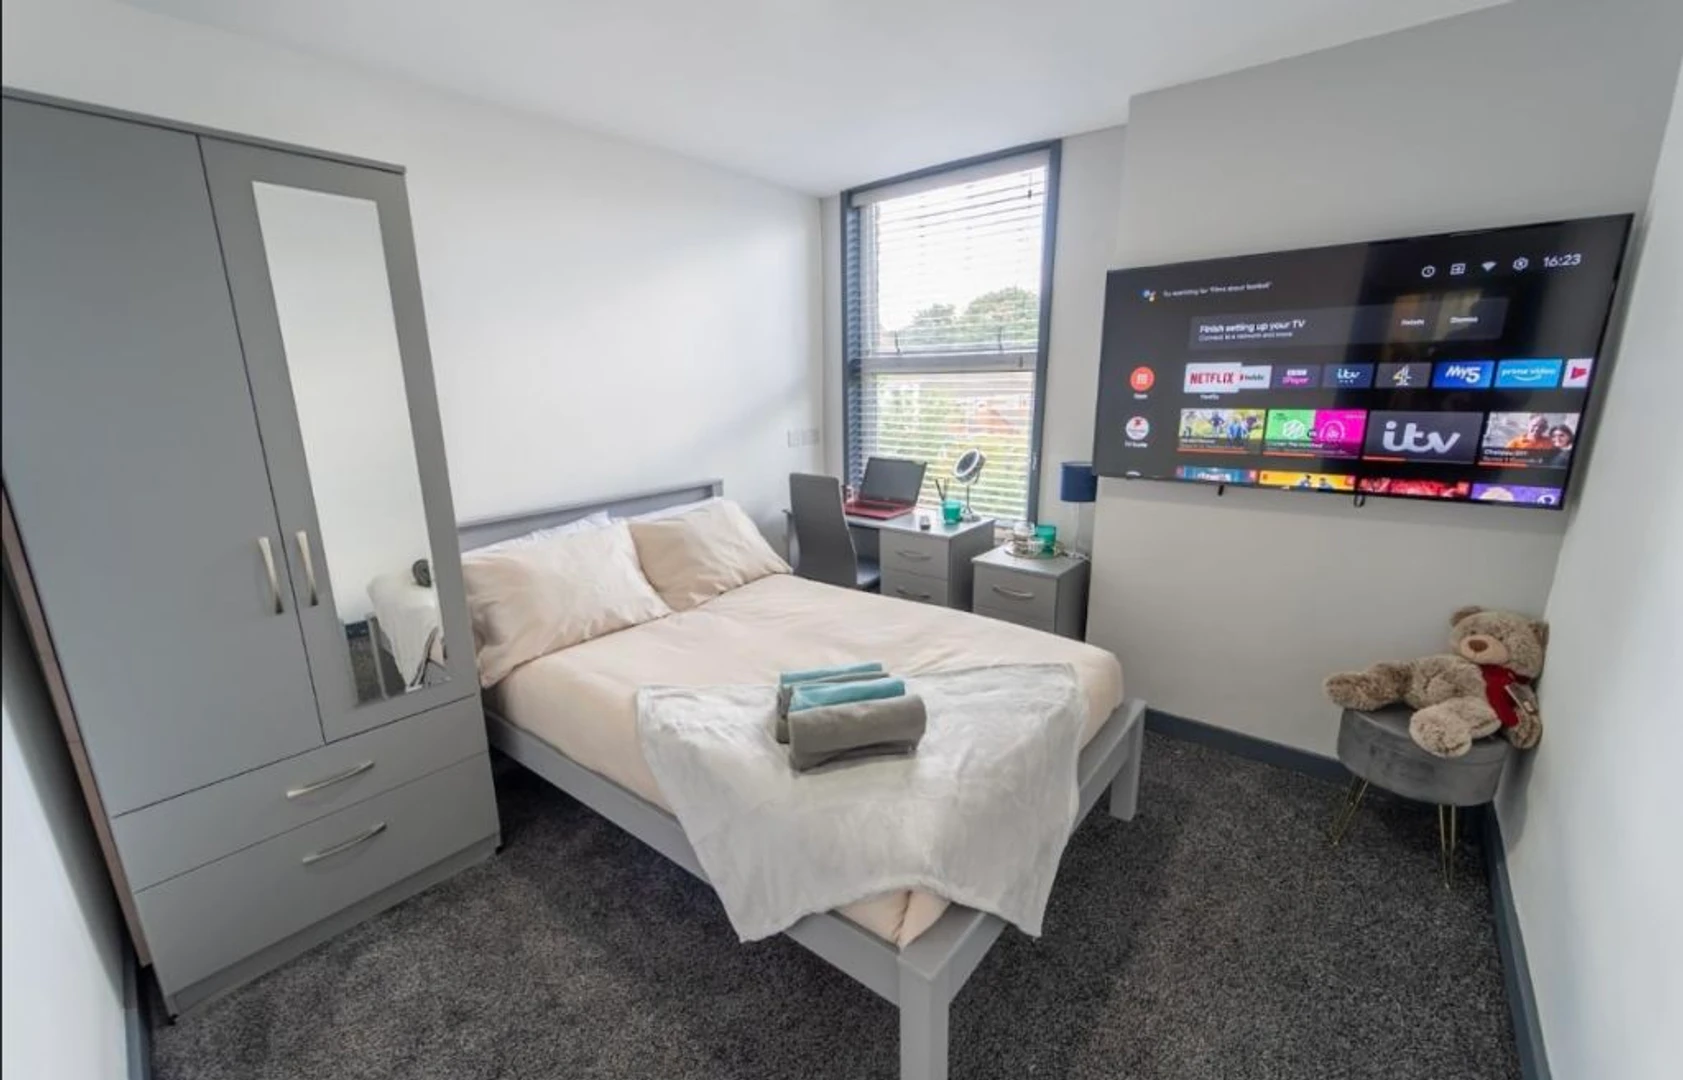 Cheap private room in birmingham